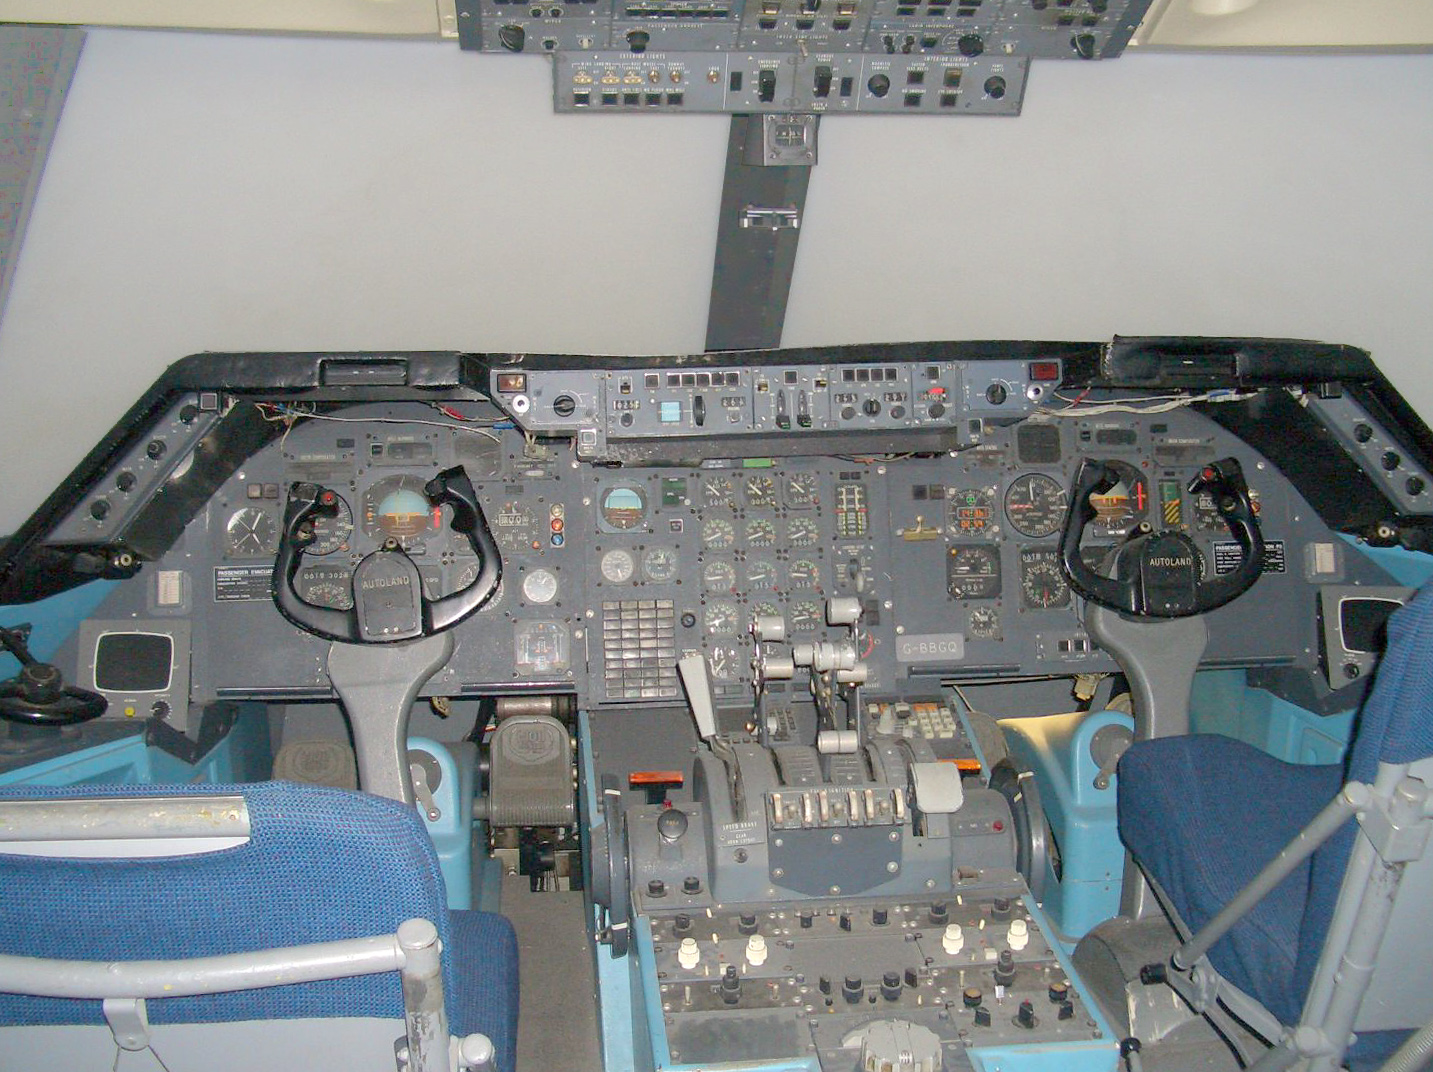 Lockheed L-1011 TriStar 500 next